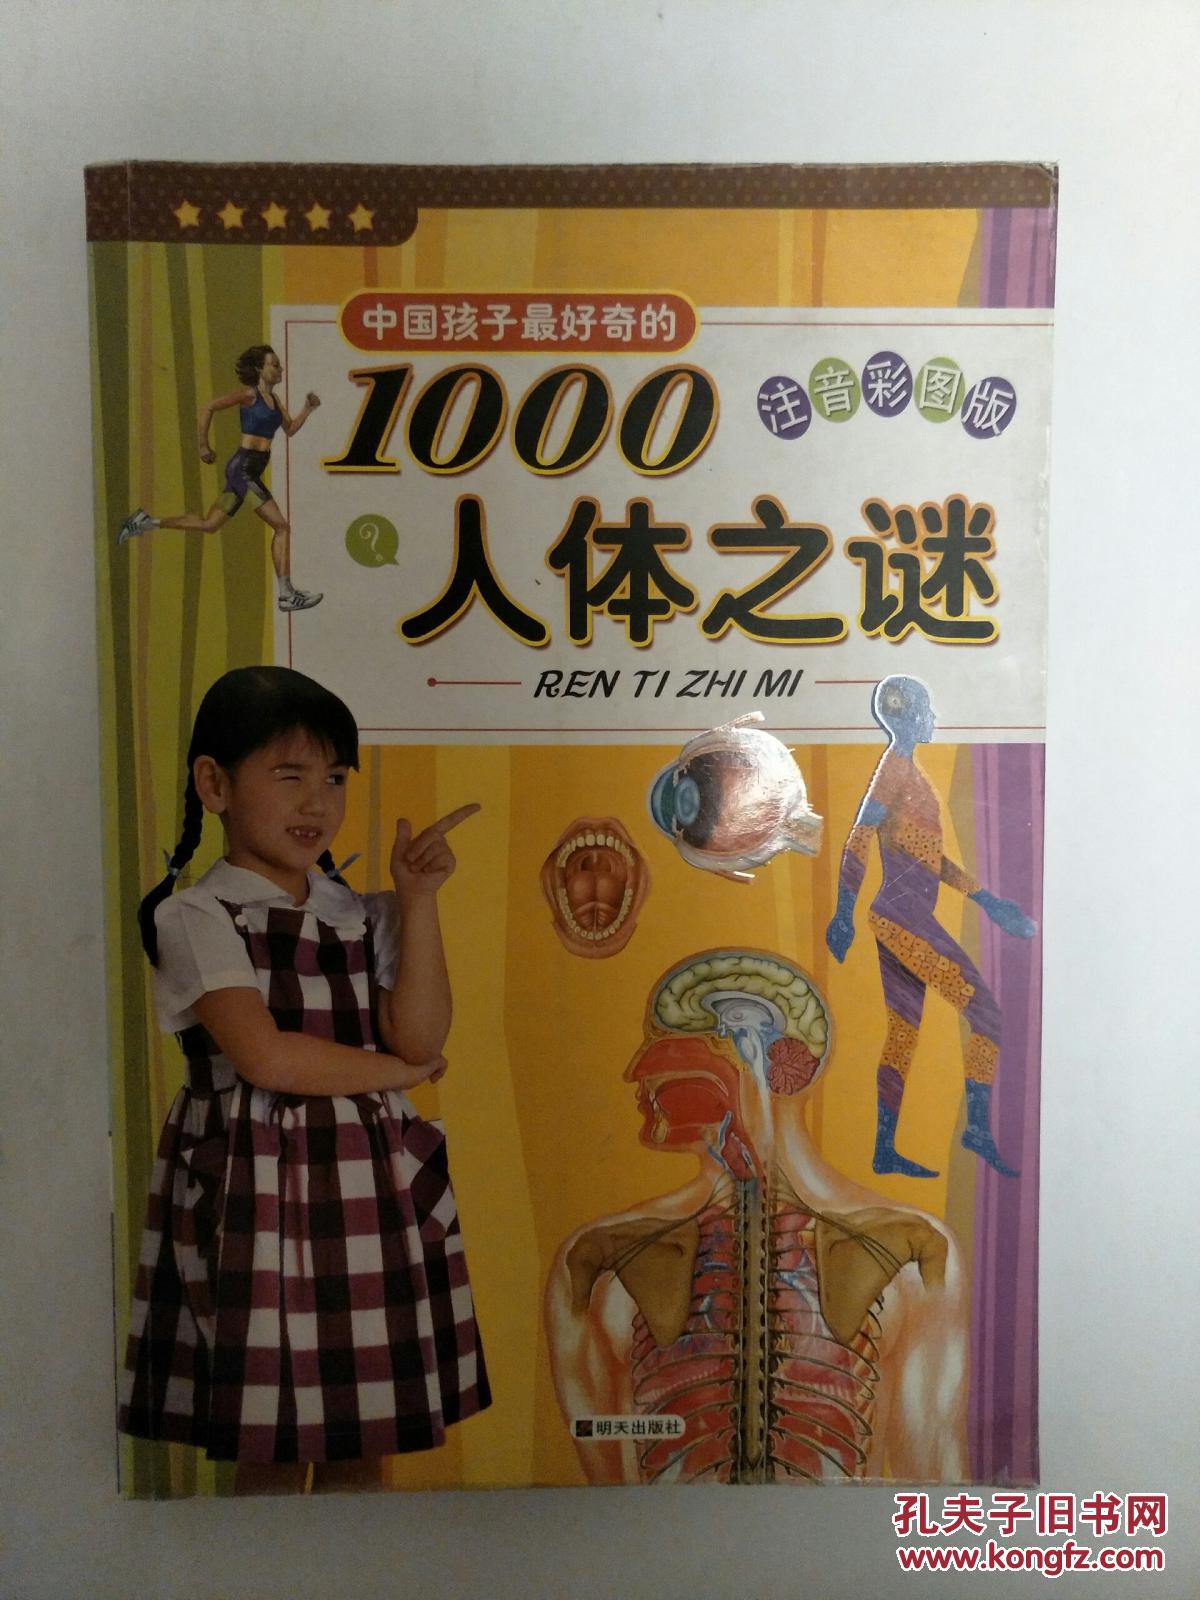 中国孩子好奇的1000人体之谜